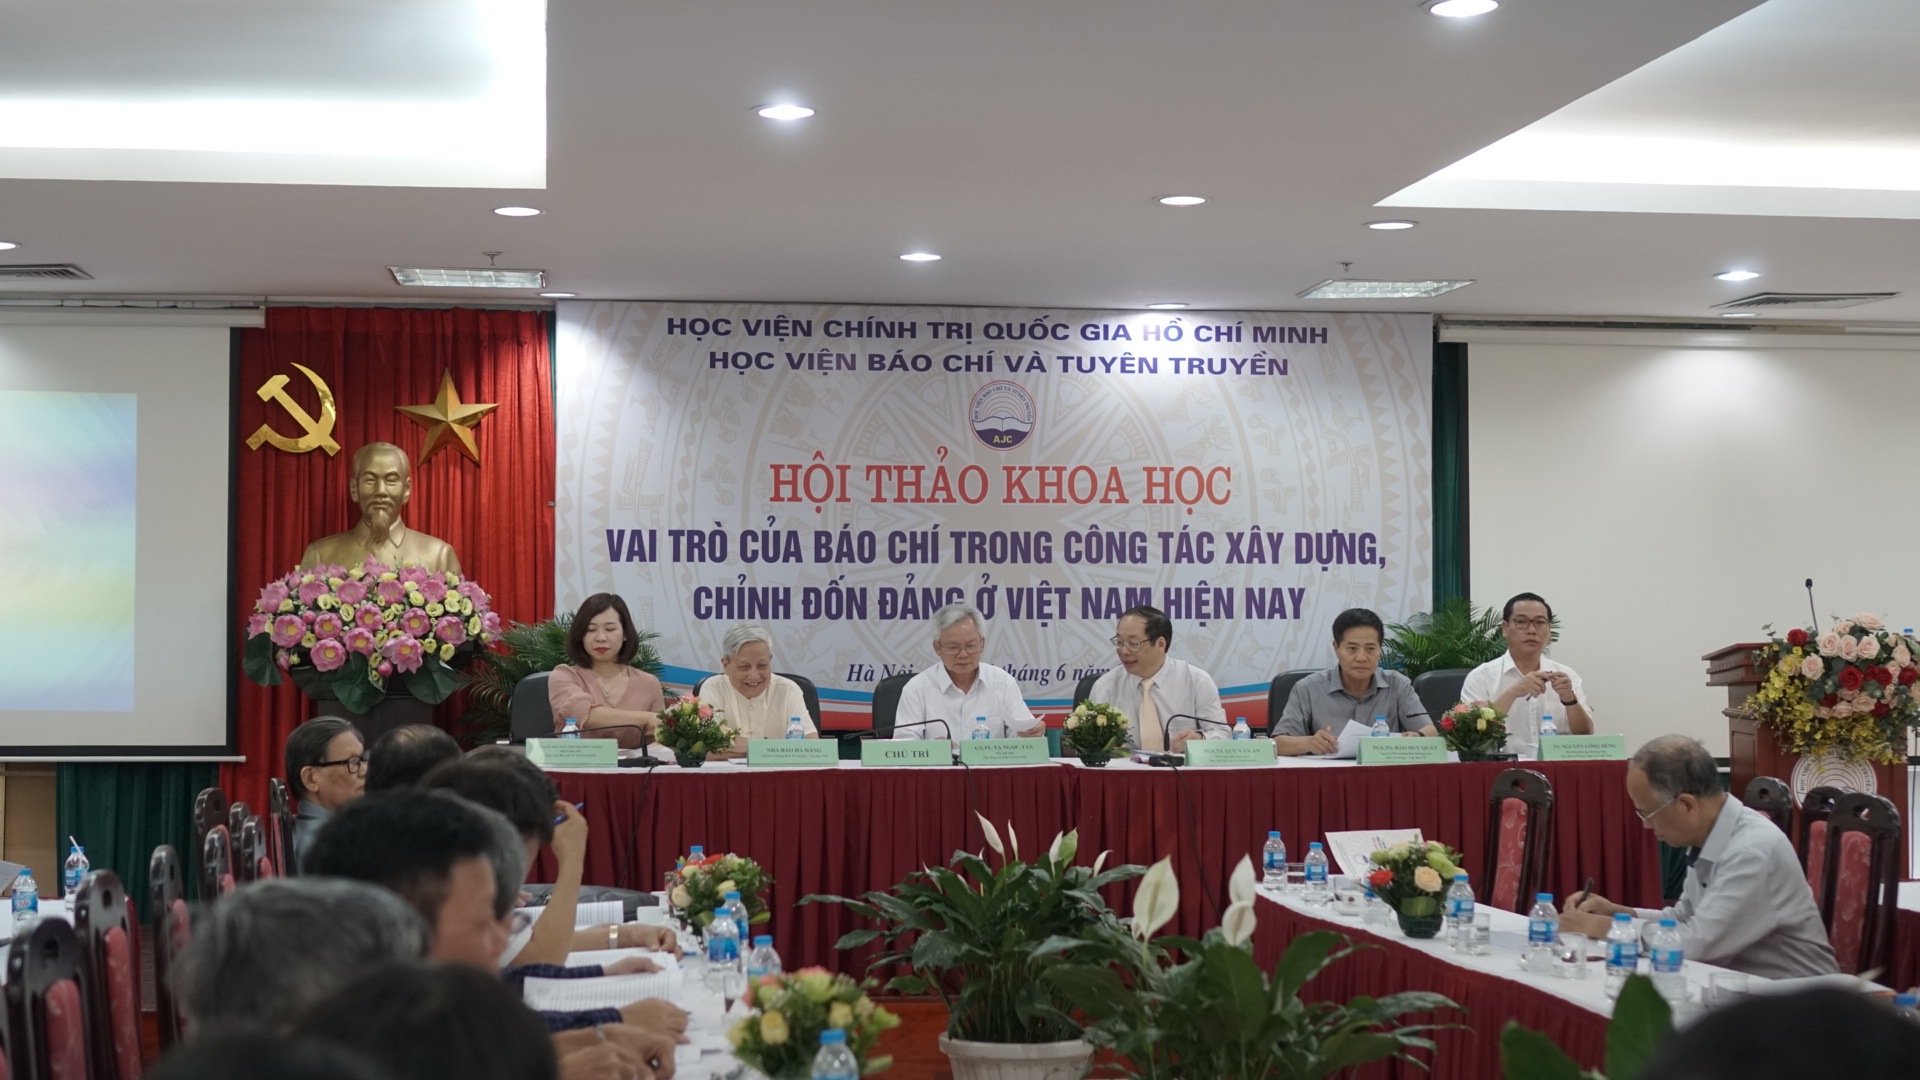 Hội thảo khoa học quốc gia: Vai trò của báo chí trong công tác xây dựng, chỉnh đốn Đảng ở Việt Nam hiện nay